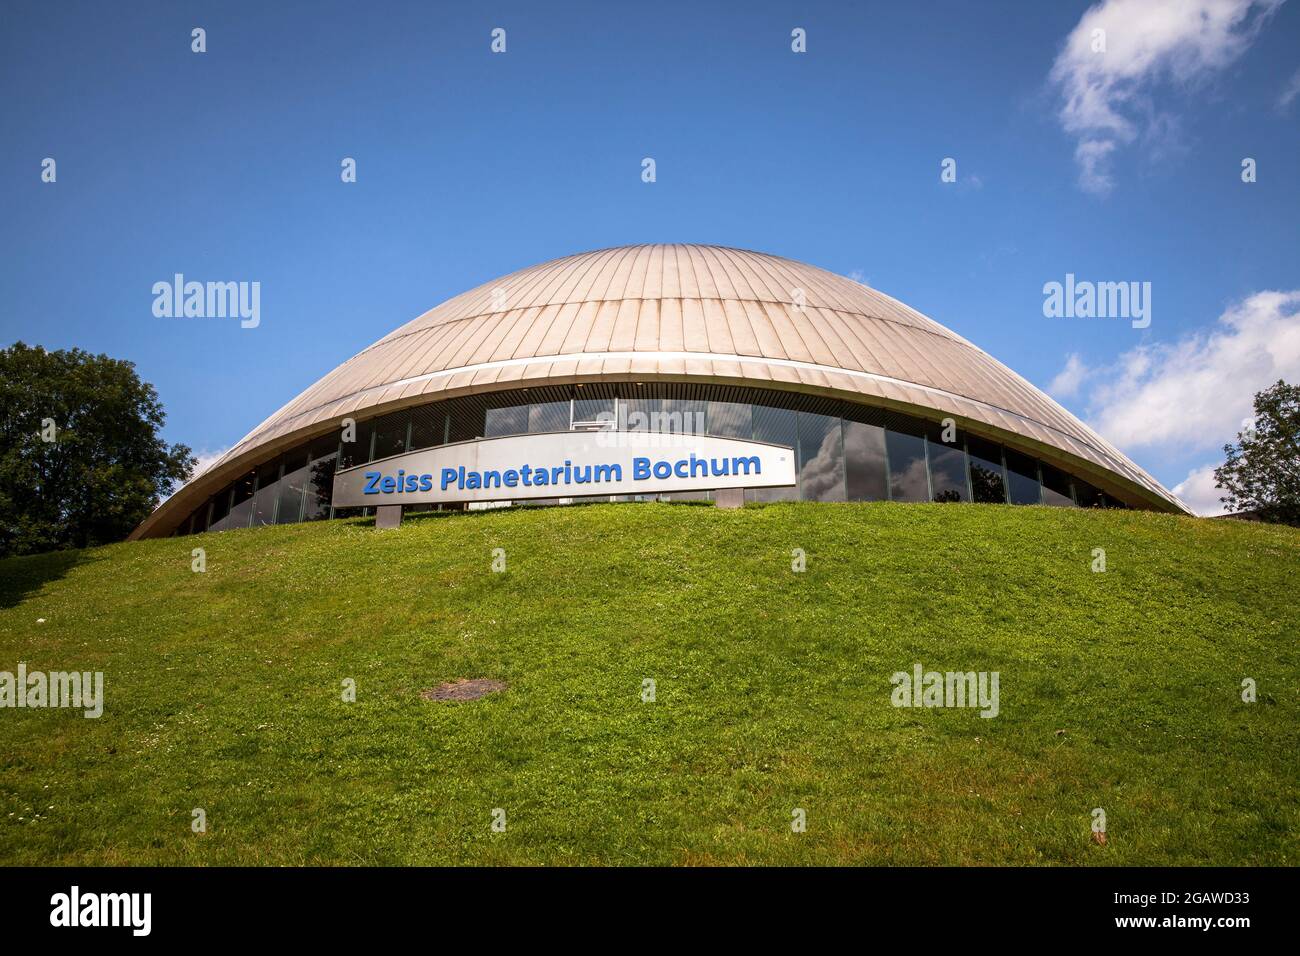 the Zeiss planetarium, Bochum, North Rhine-Westphalia, Germany.  das Zeiss Planetarium, Bochum, Nordrhein-Westfalen, Deutschland. Stock Photo